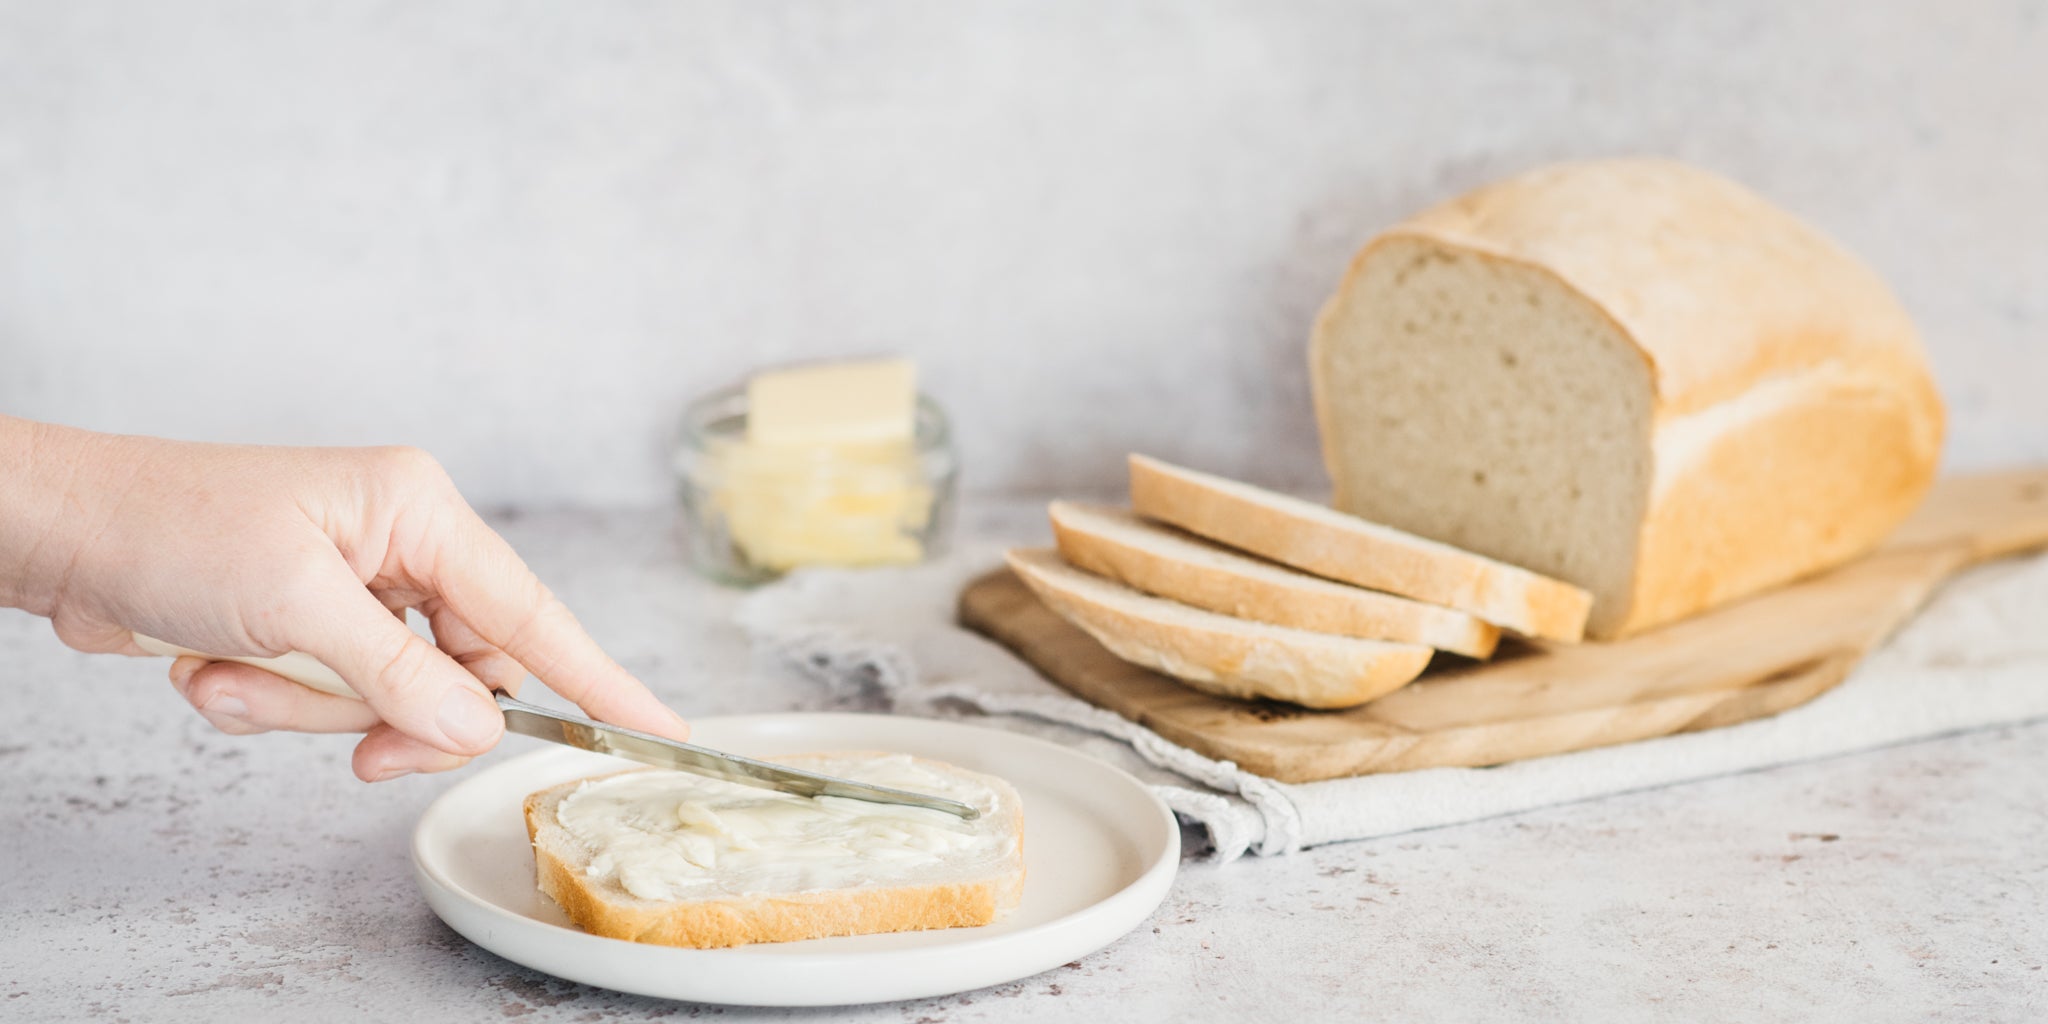 Spreading butter over slices of fresh homemade white bread